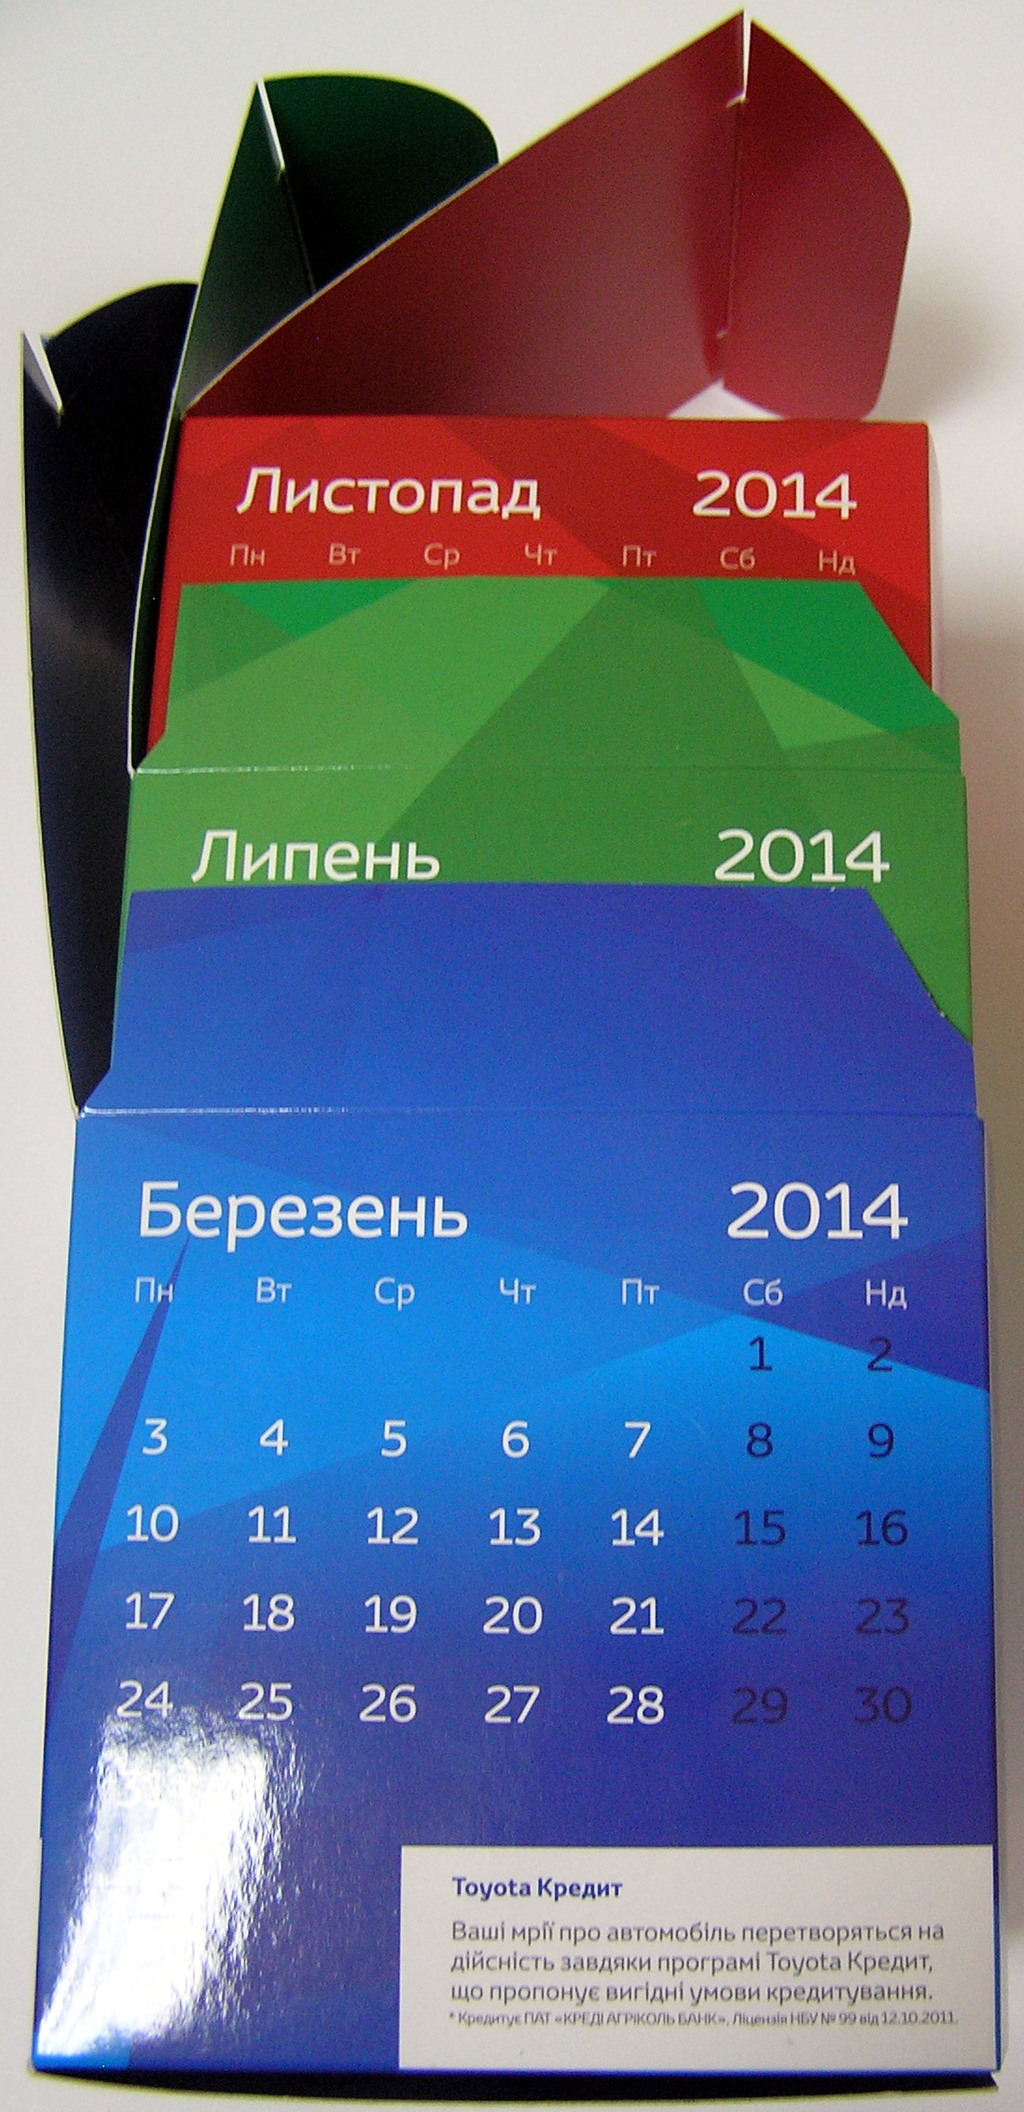 Изготовление настольных календарей.  Полиграфия типографии Макрос, печать настольных календарей, спецификация 967995-8